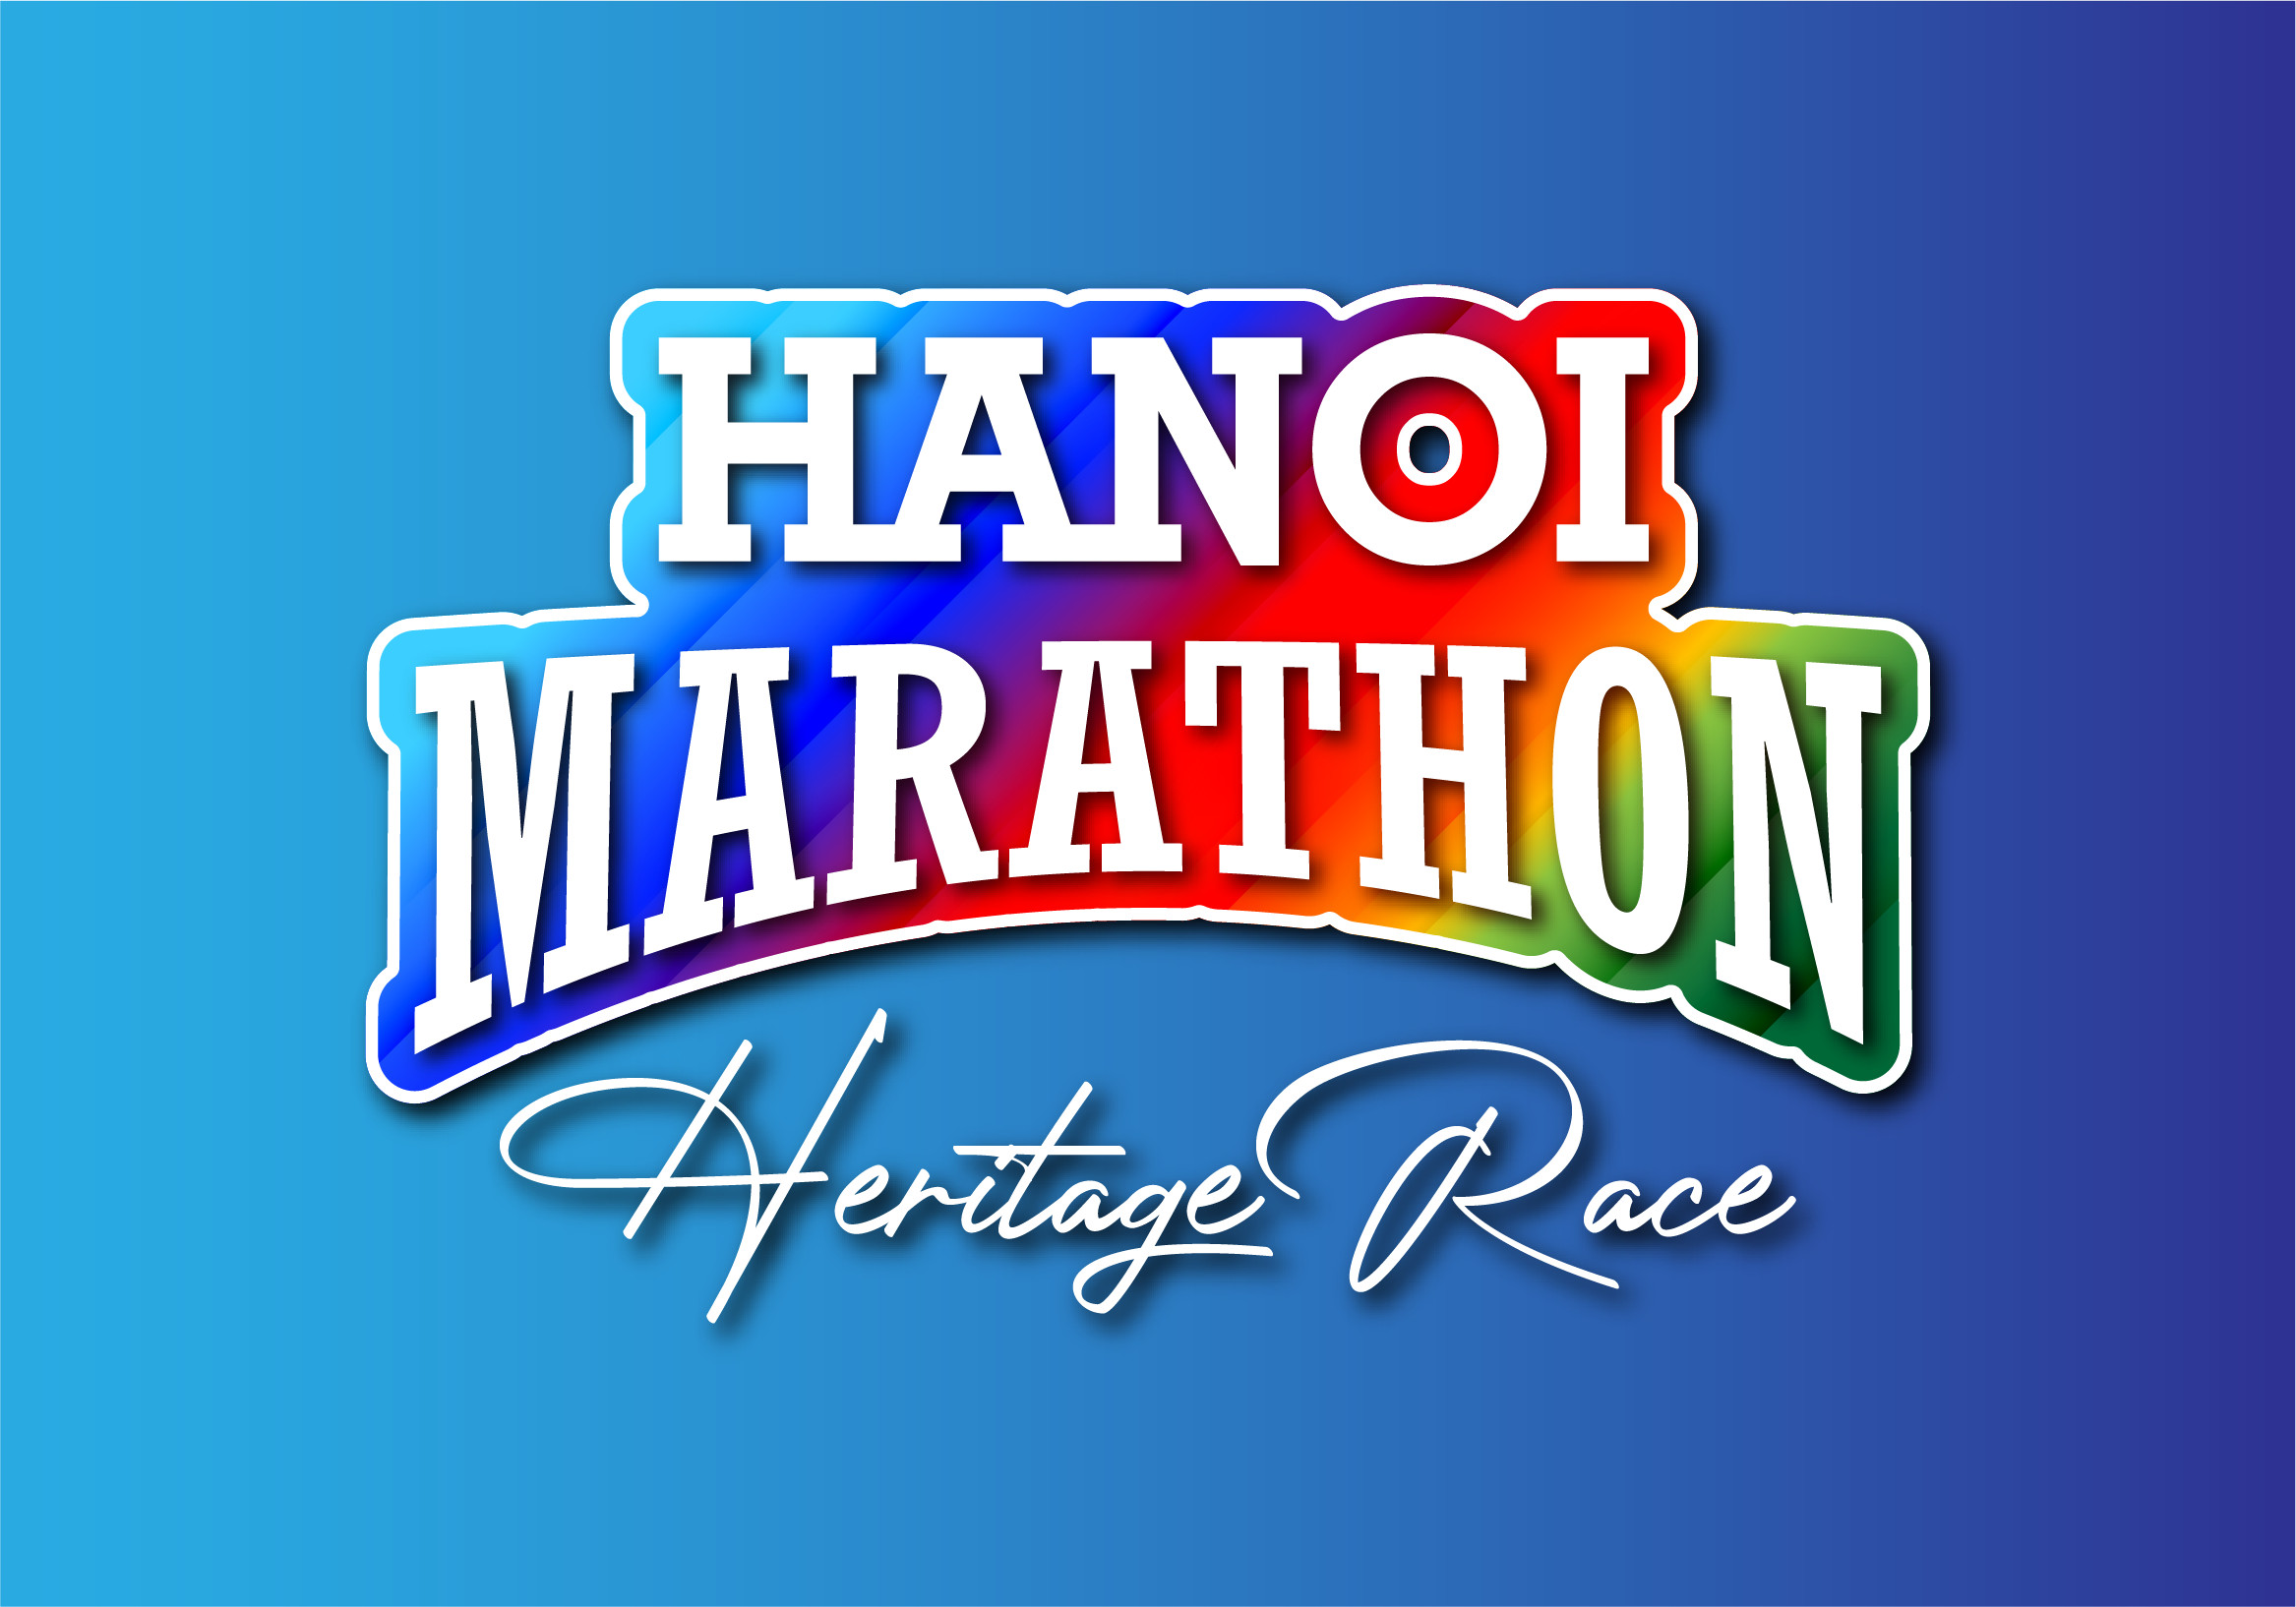 Hanoi Marathon Heritage Race Registration Ends March 26, 2023